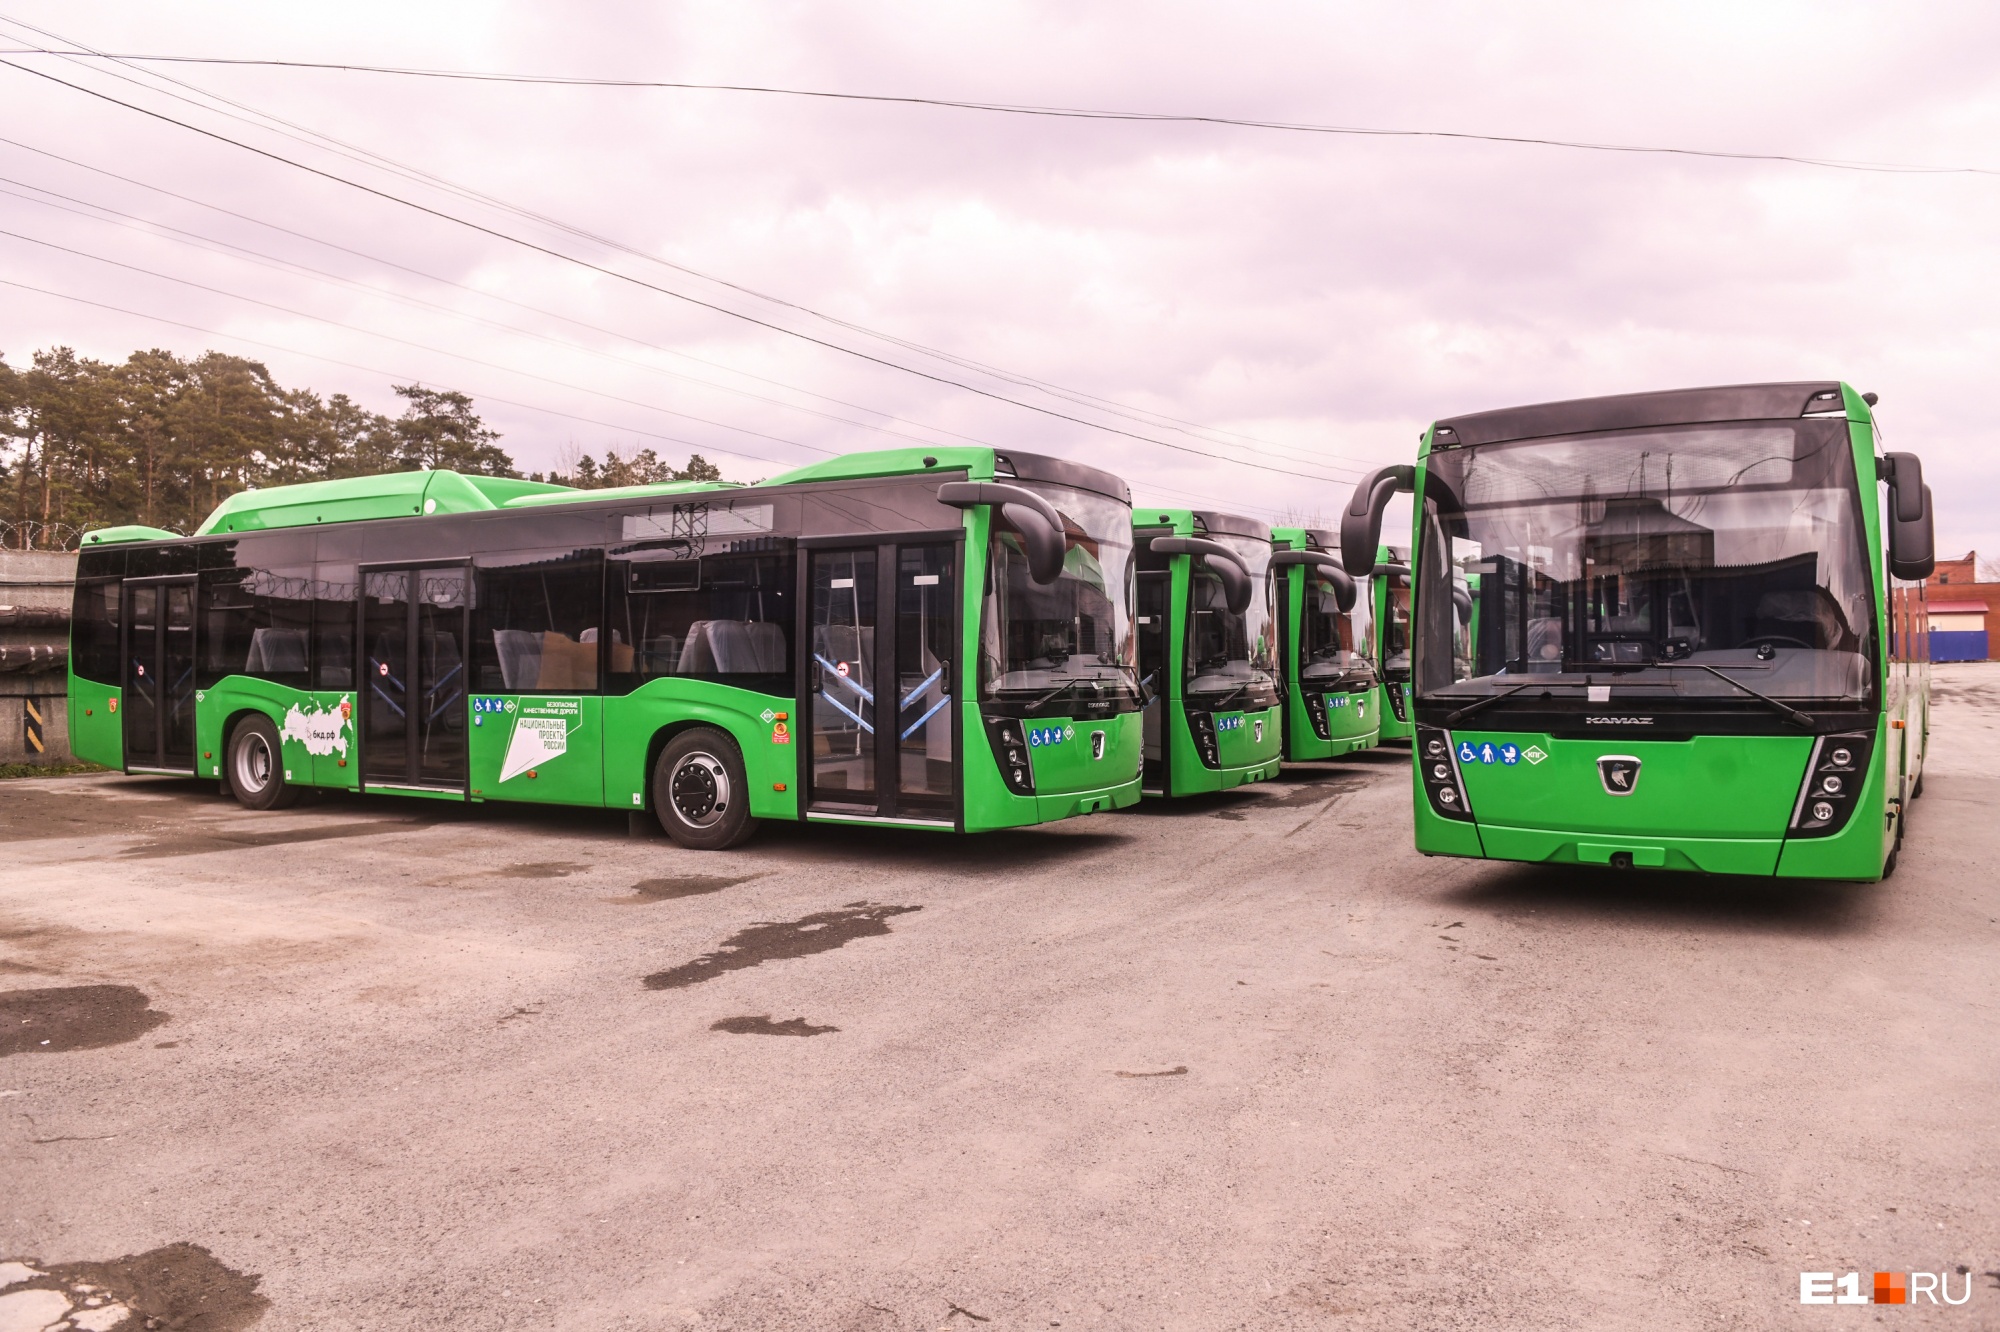 С кондиционером и широкими сиденьями: изучаем новенькие автобусы, которые вот-вот выйдут на линию